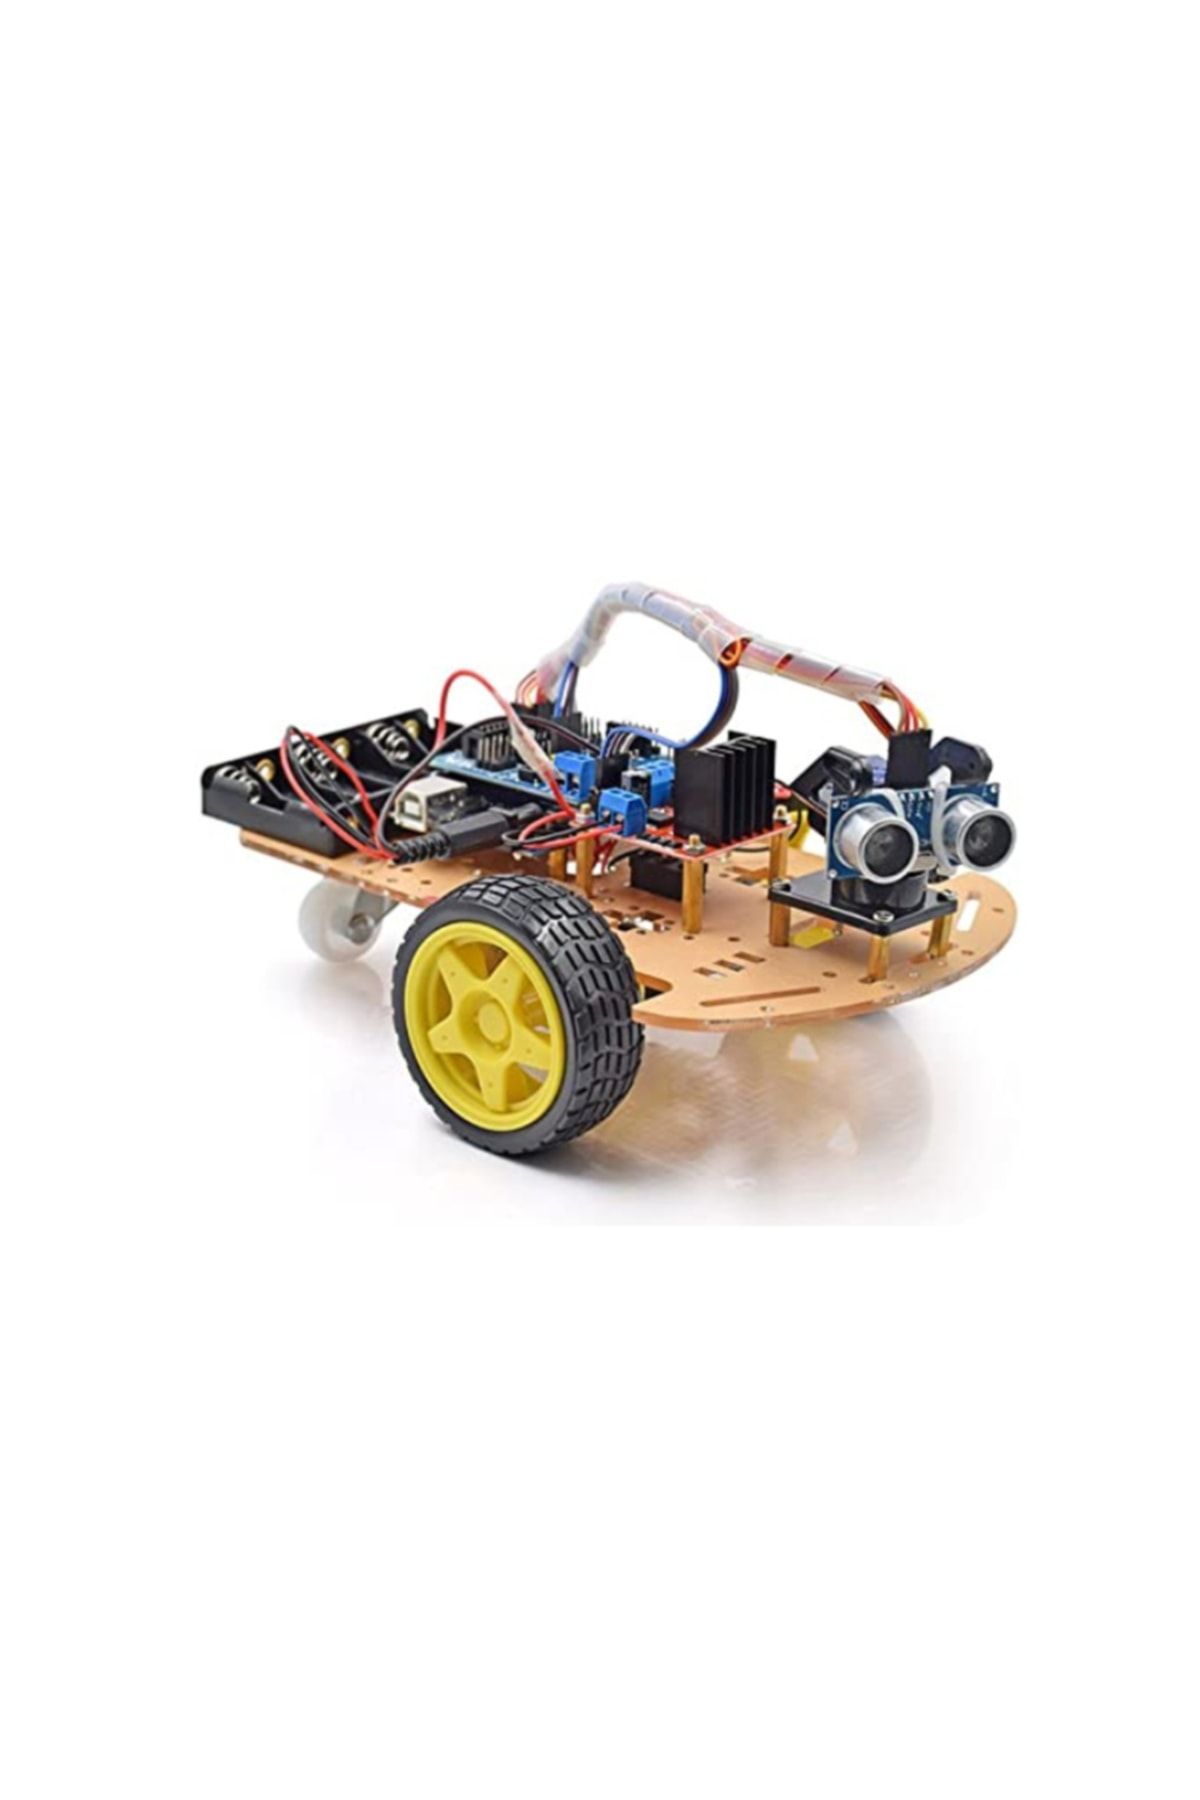 Genel Markalar Emes Robotik Engelden Kaçan 2wd Robot Araba Kiti -(MONTAJLI VE ÖRNEK KOD YÜKLÜ)